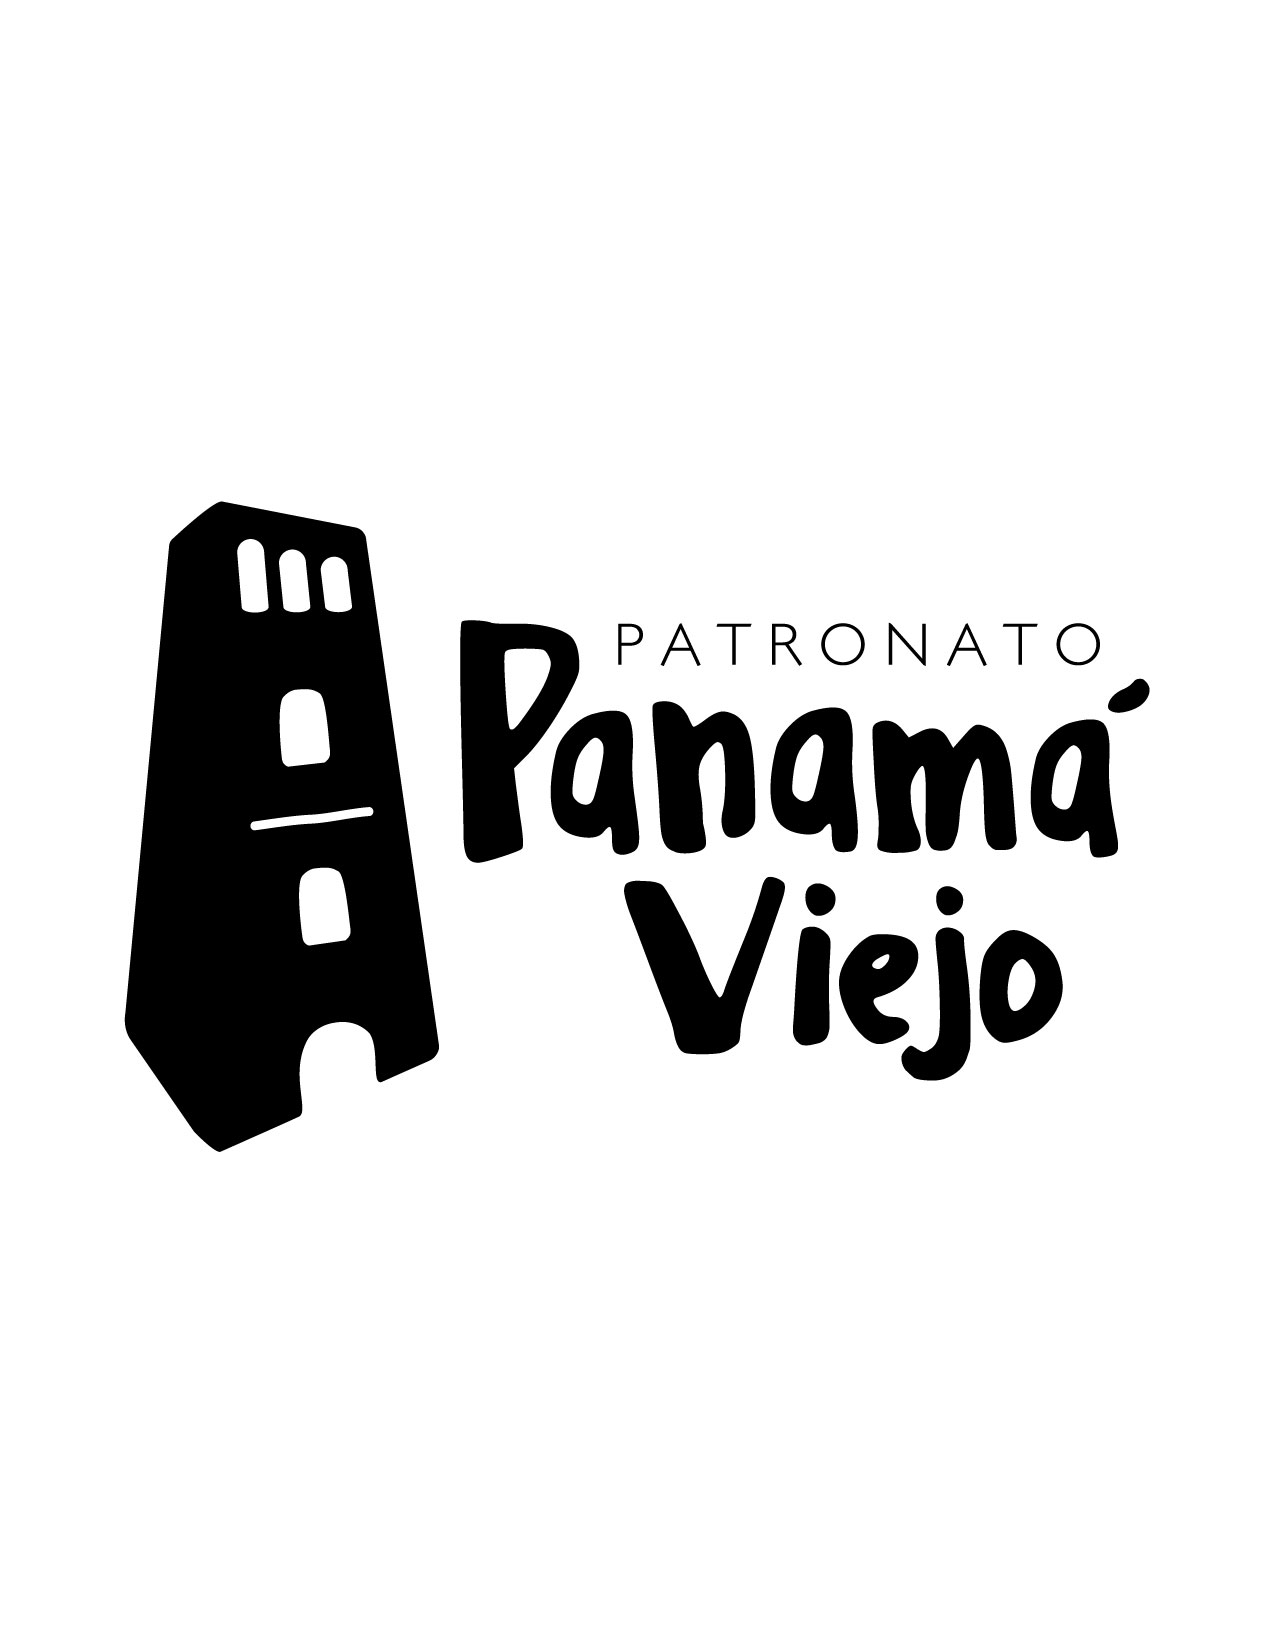 Casa de los Genoveses del Conjunto Monumental Histórico de Panamá la Vieja. Logo Patronato Panamá Viejo. Fotografía Yahaira Núñez Cortés